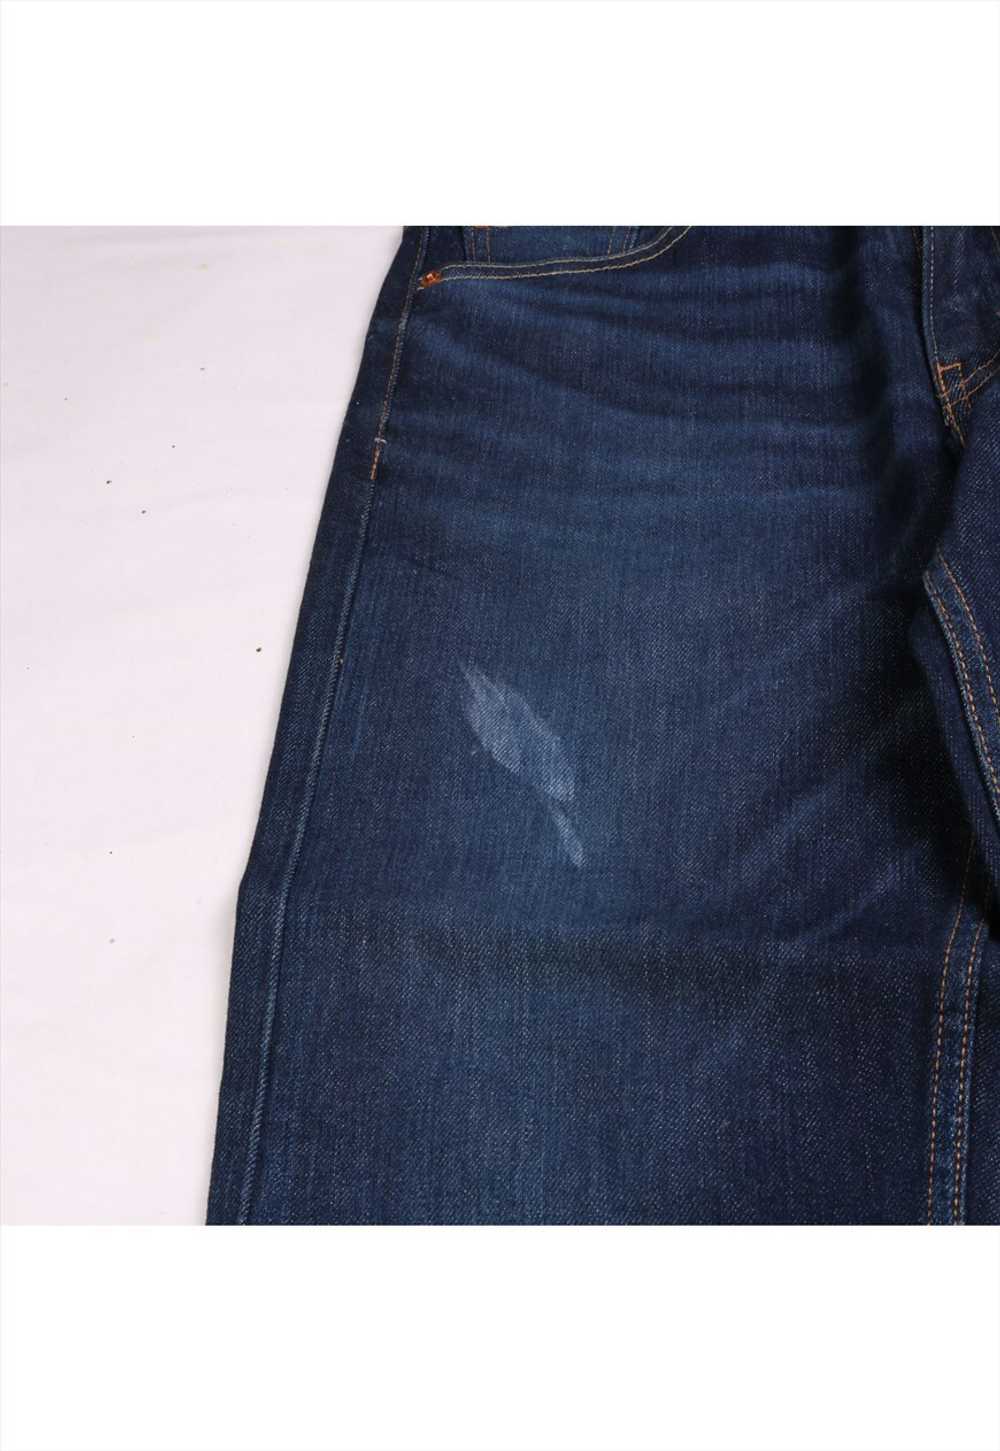 Vintage 90's Levi's Jeans / Pants 513 Denim Slim - image 4